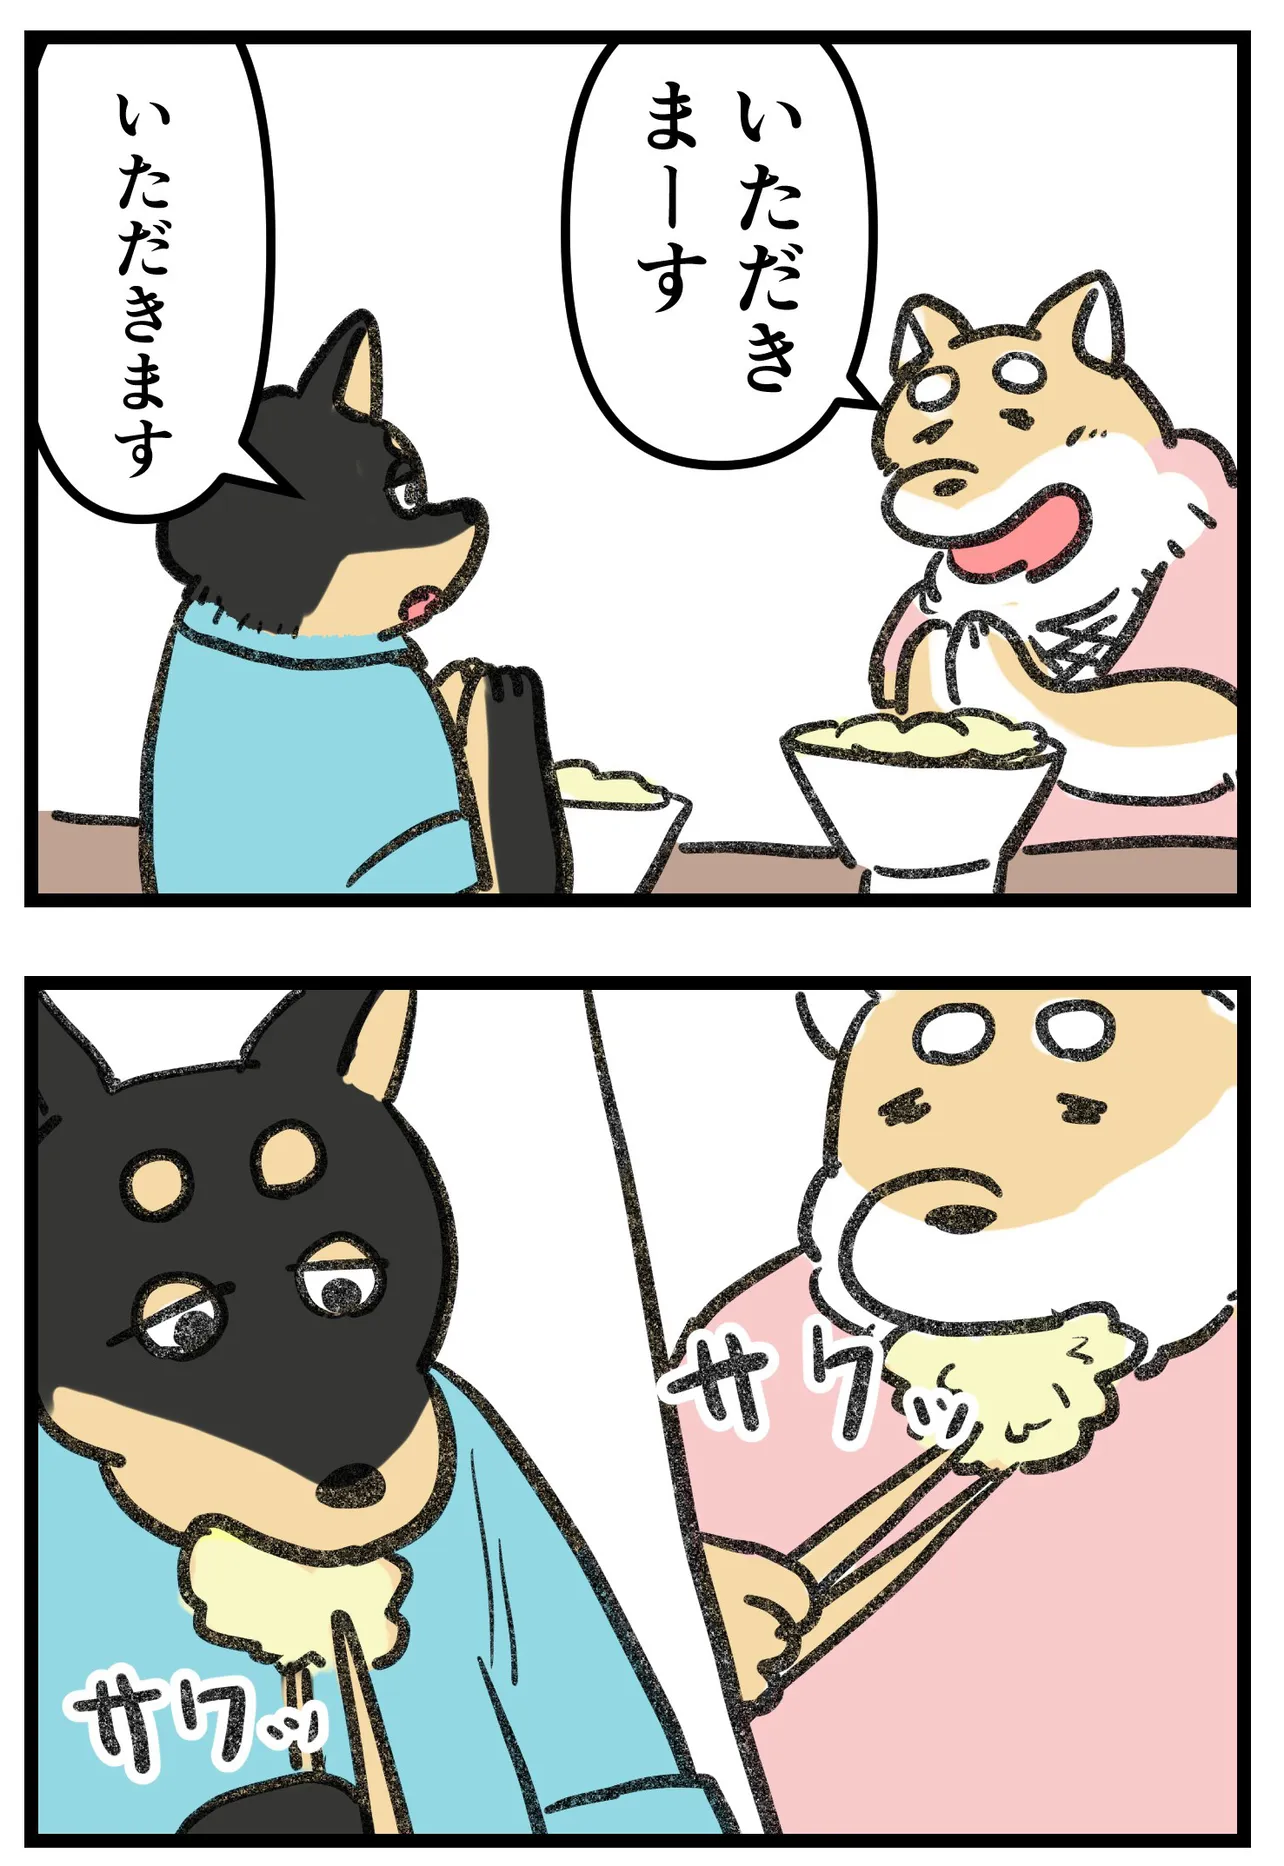 『柴犬二匹が山菜の天ぷらを作って食べる話』(11/16)